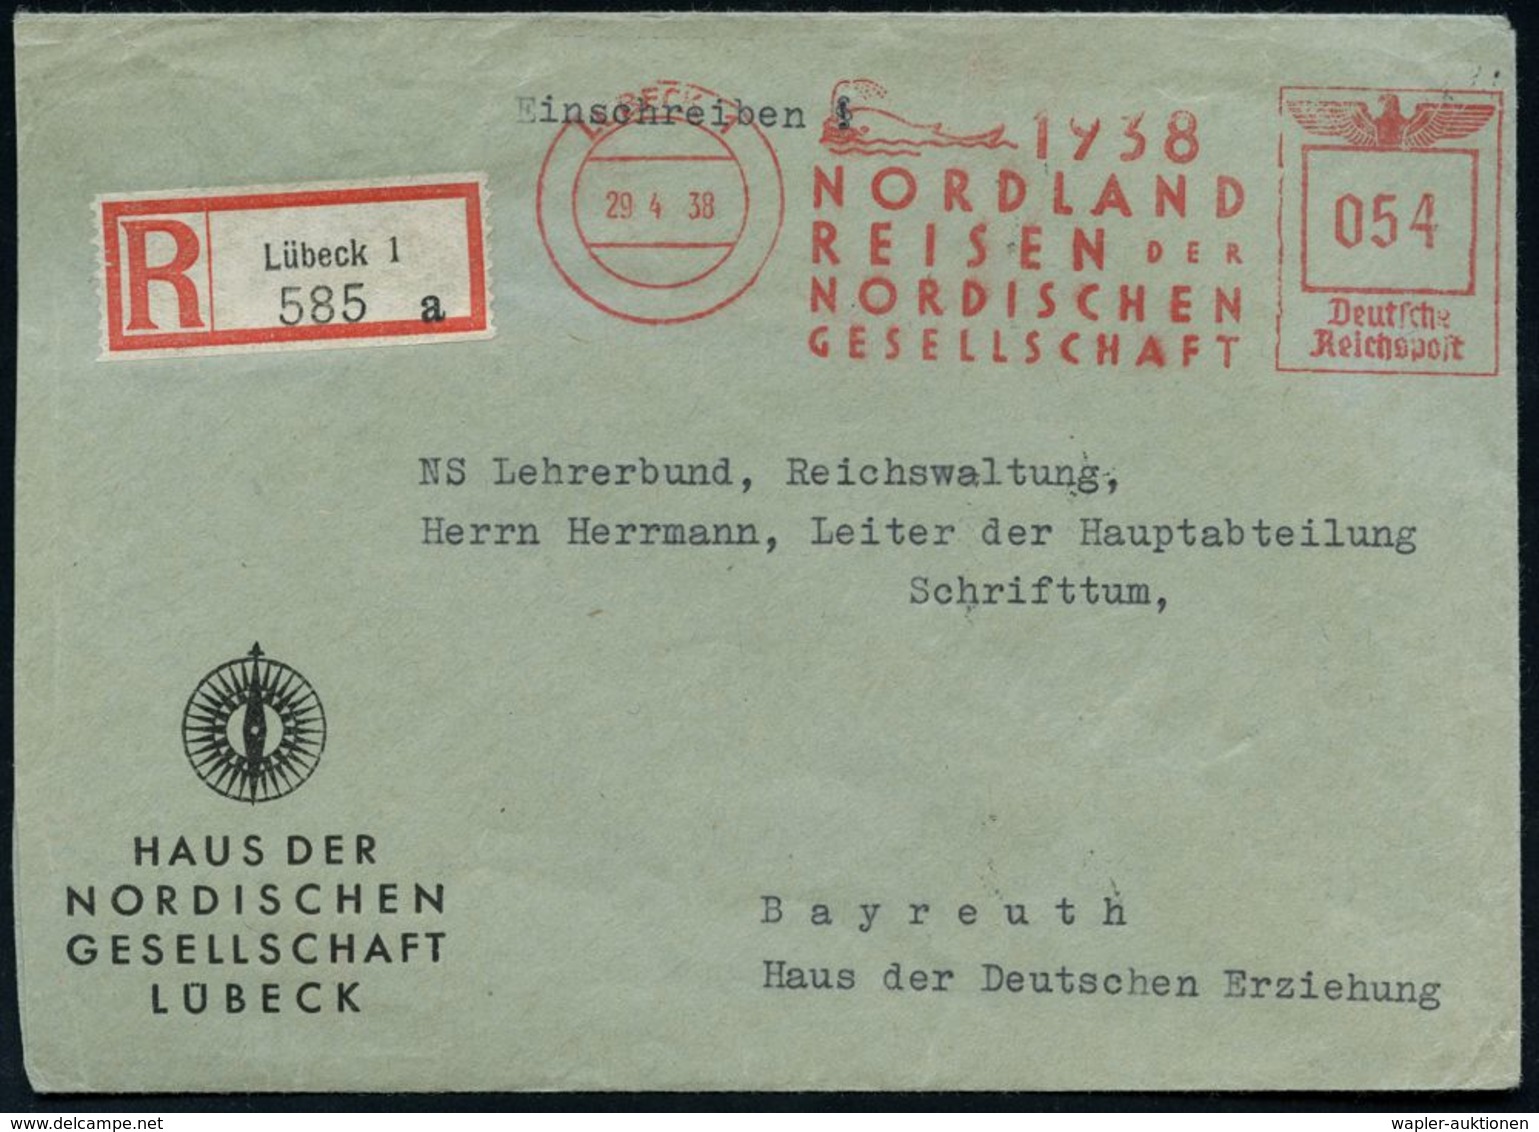 LÜBECK 1/ 1937/ NORDLAND/ REISEN DER/ NORDISCHEN/ GESELLSCHAFT 1938 (29.4.) Sehr Seltener AFS 054 Pf. = Wal (bläst Wasse - Expéditions Arctiques